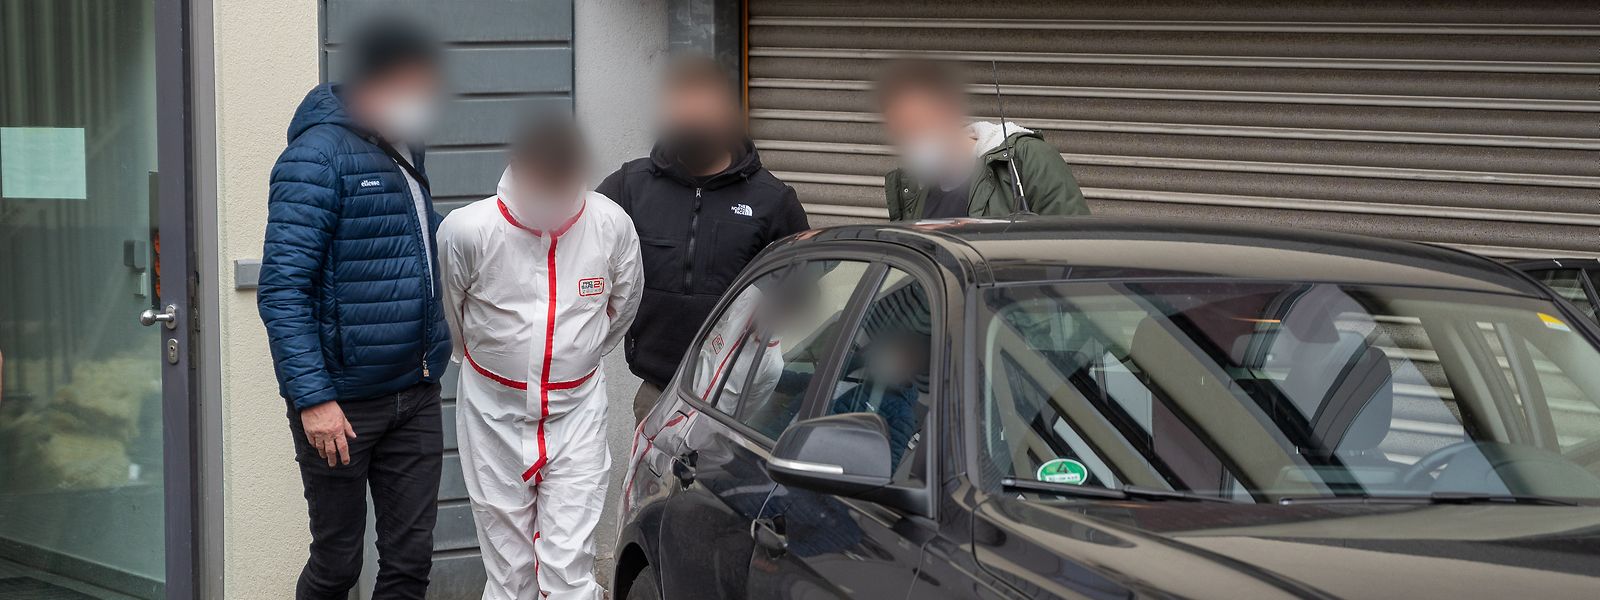 Polizisten bringen einen der Tatverdächtigen (im weißen Overall) kurz nach seine Festnahme aus dem Justizgebäude in Kaiserslautern. 